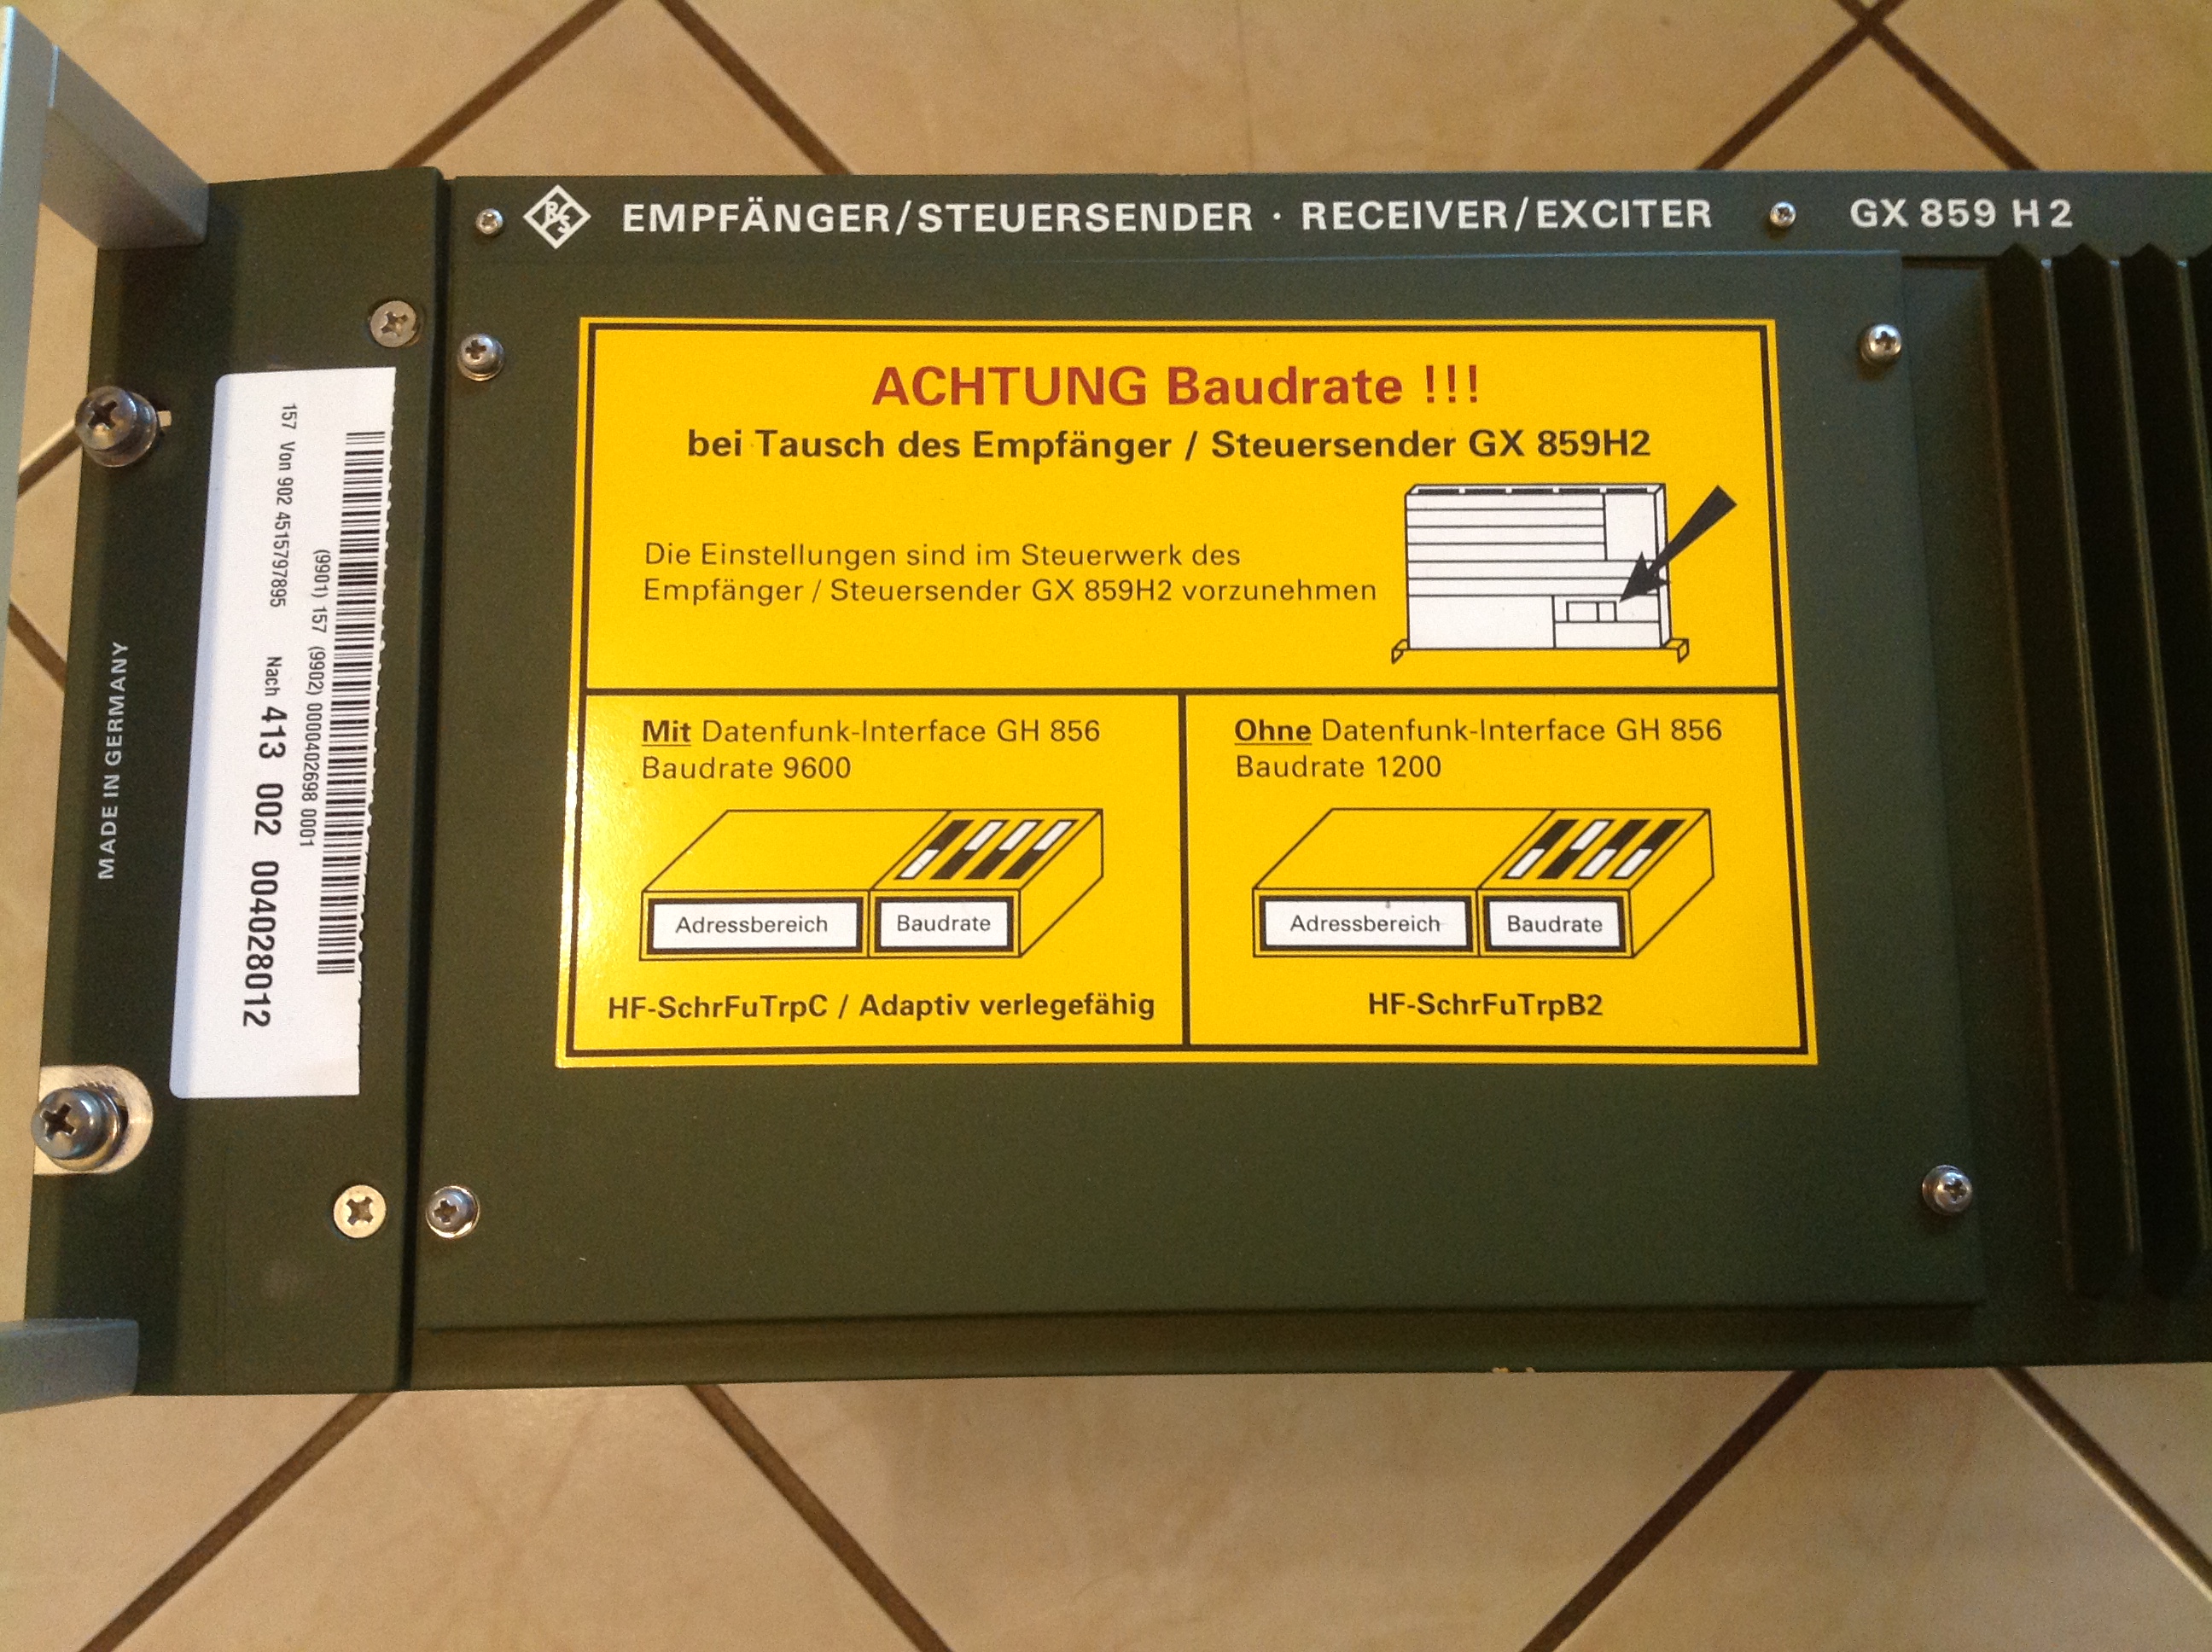 Rohde &amp; Schwarz Empfänger/Steuersender - Receiver/Exciter GX 859 H2